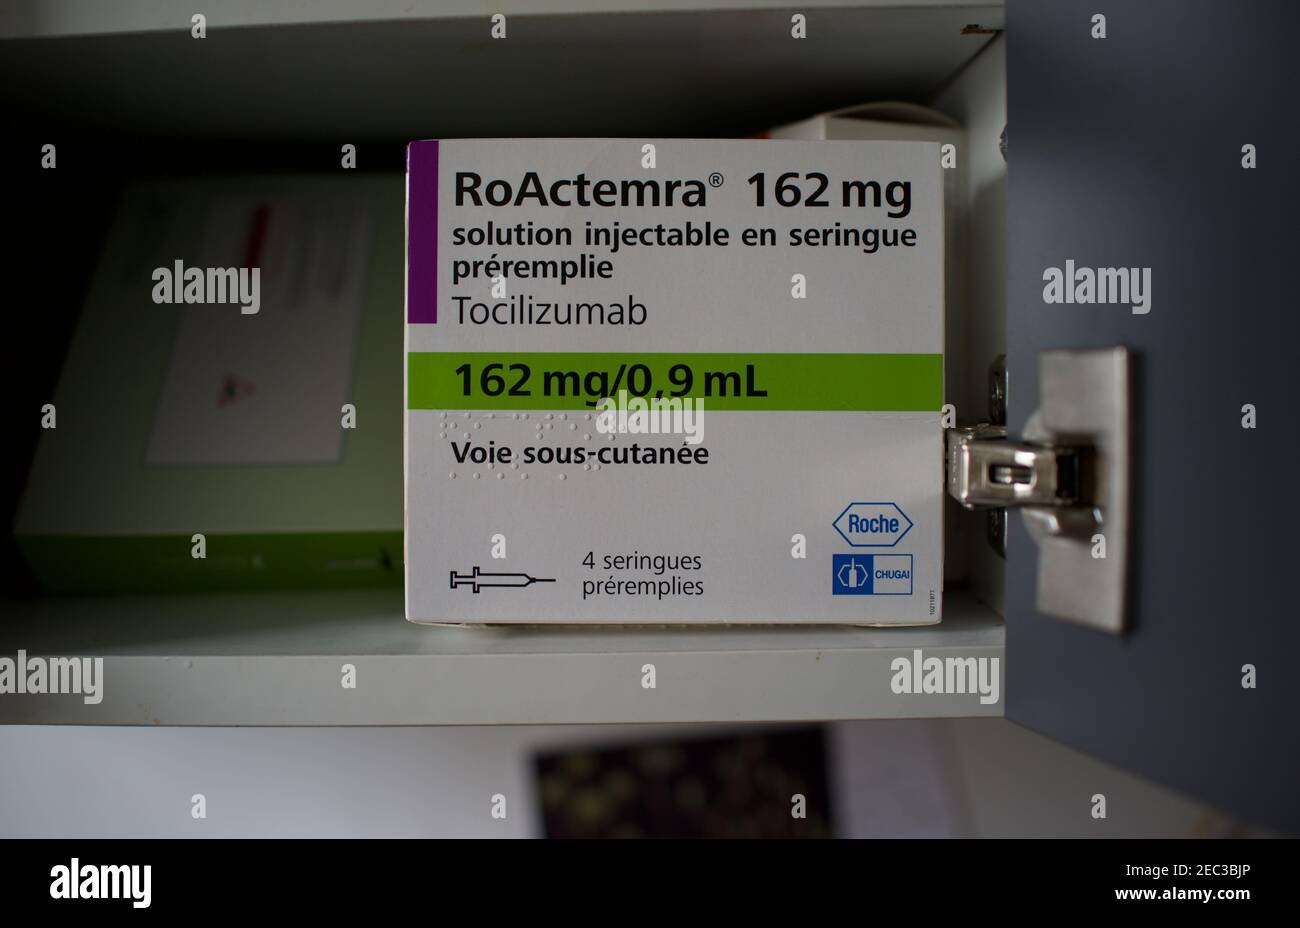 Tocilizumab, RoActemra Medication Box, médicament humanisé à base d'anticorps monoclonaux, traitement de l'arthrite utilisé pour traiter les patients Covid-19 Banque D'Images